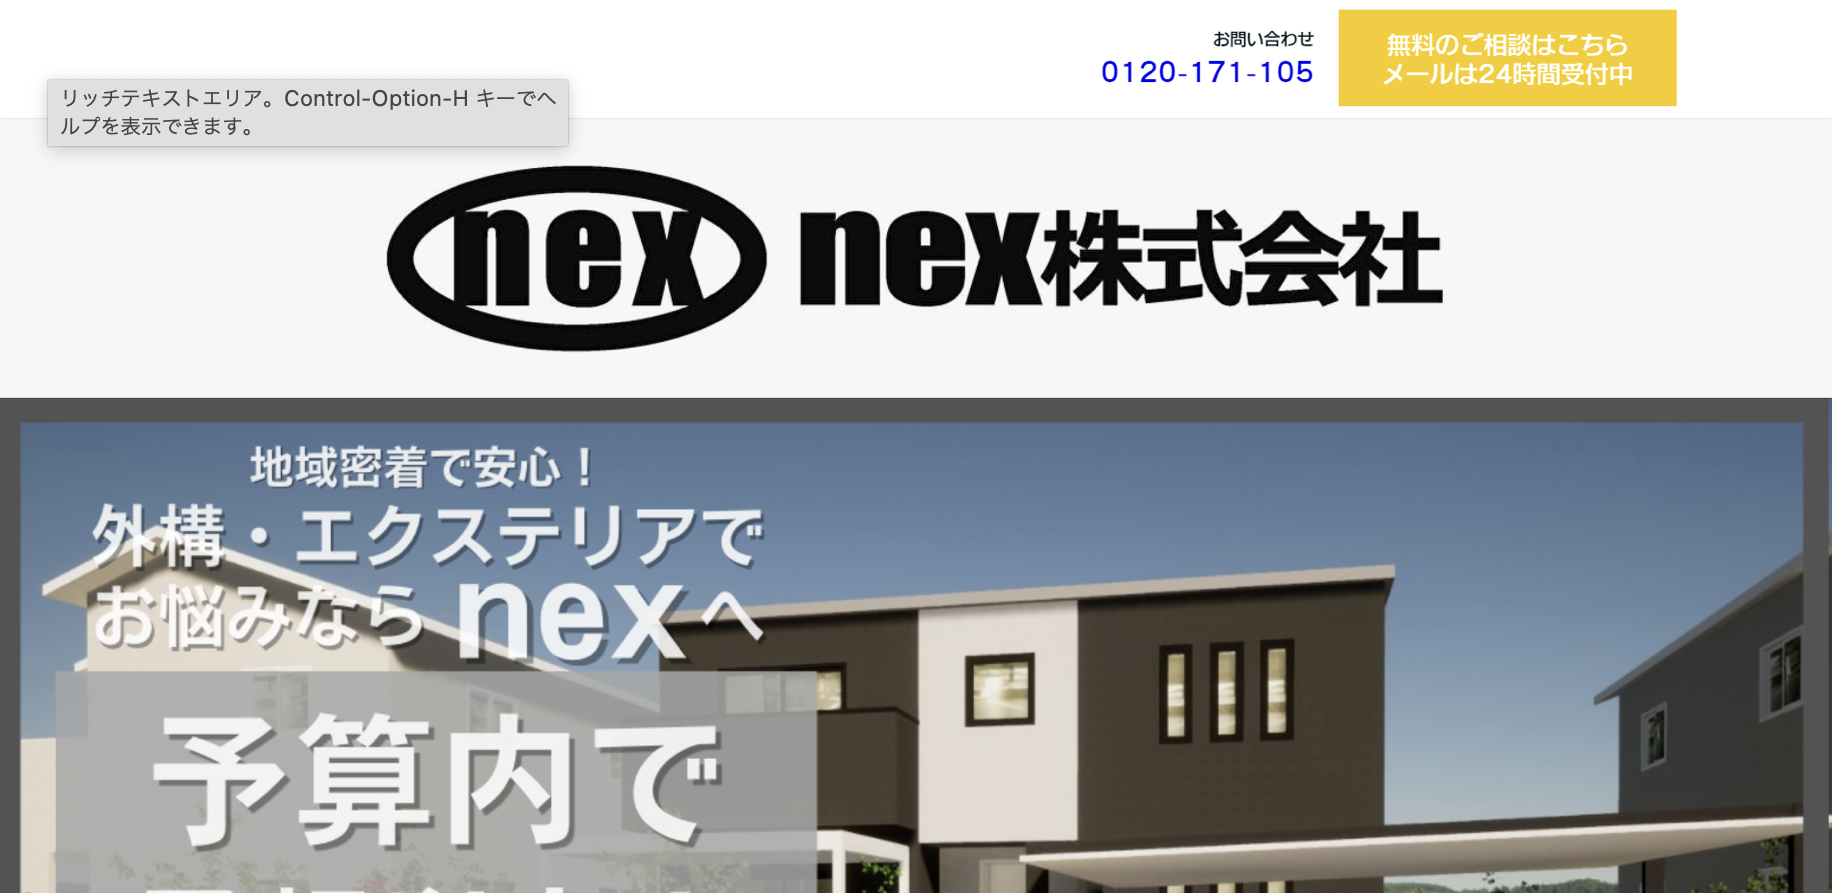 宮城県で評判のおすすめ外構業者ランキング 第10位 nex株式会社